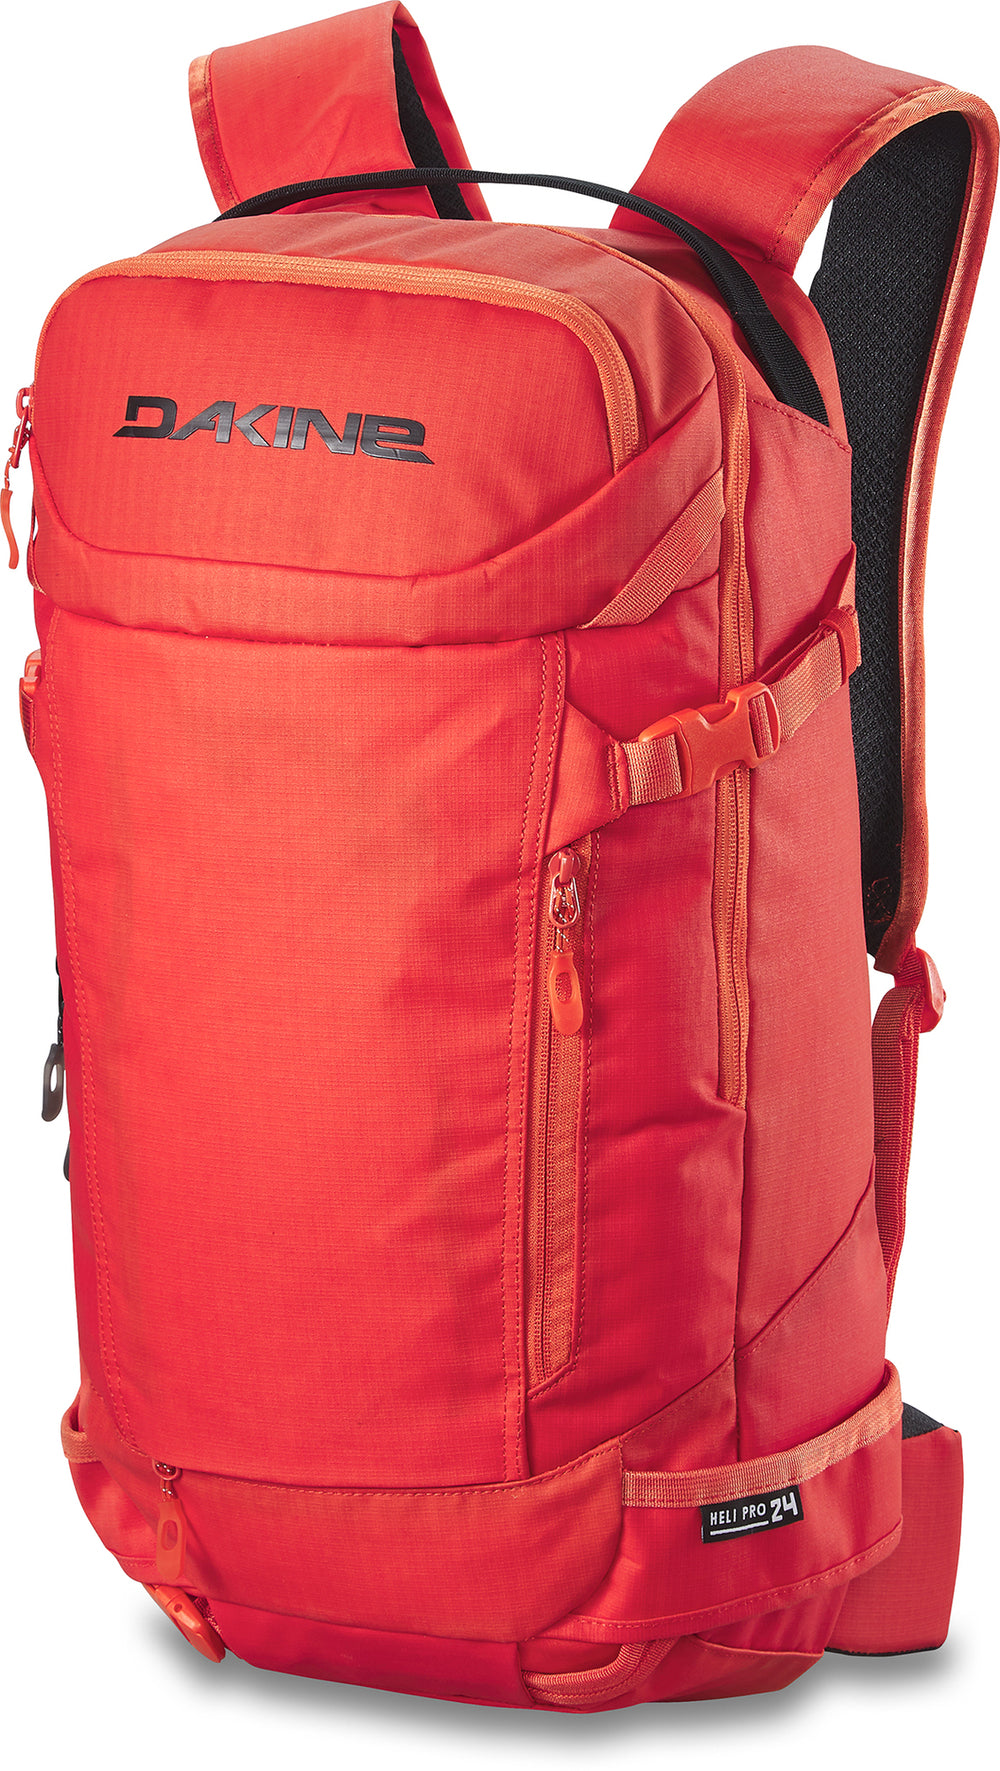 Heli 24L Backpack – Dakine